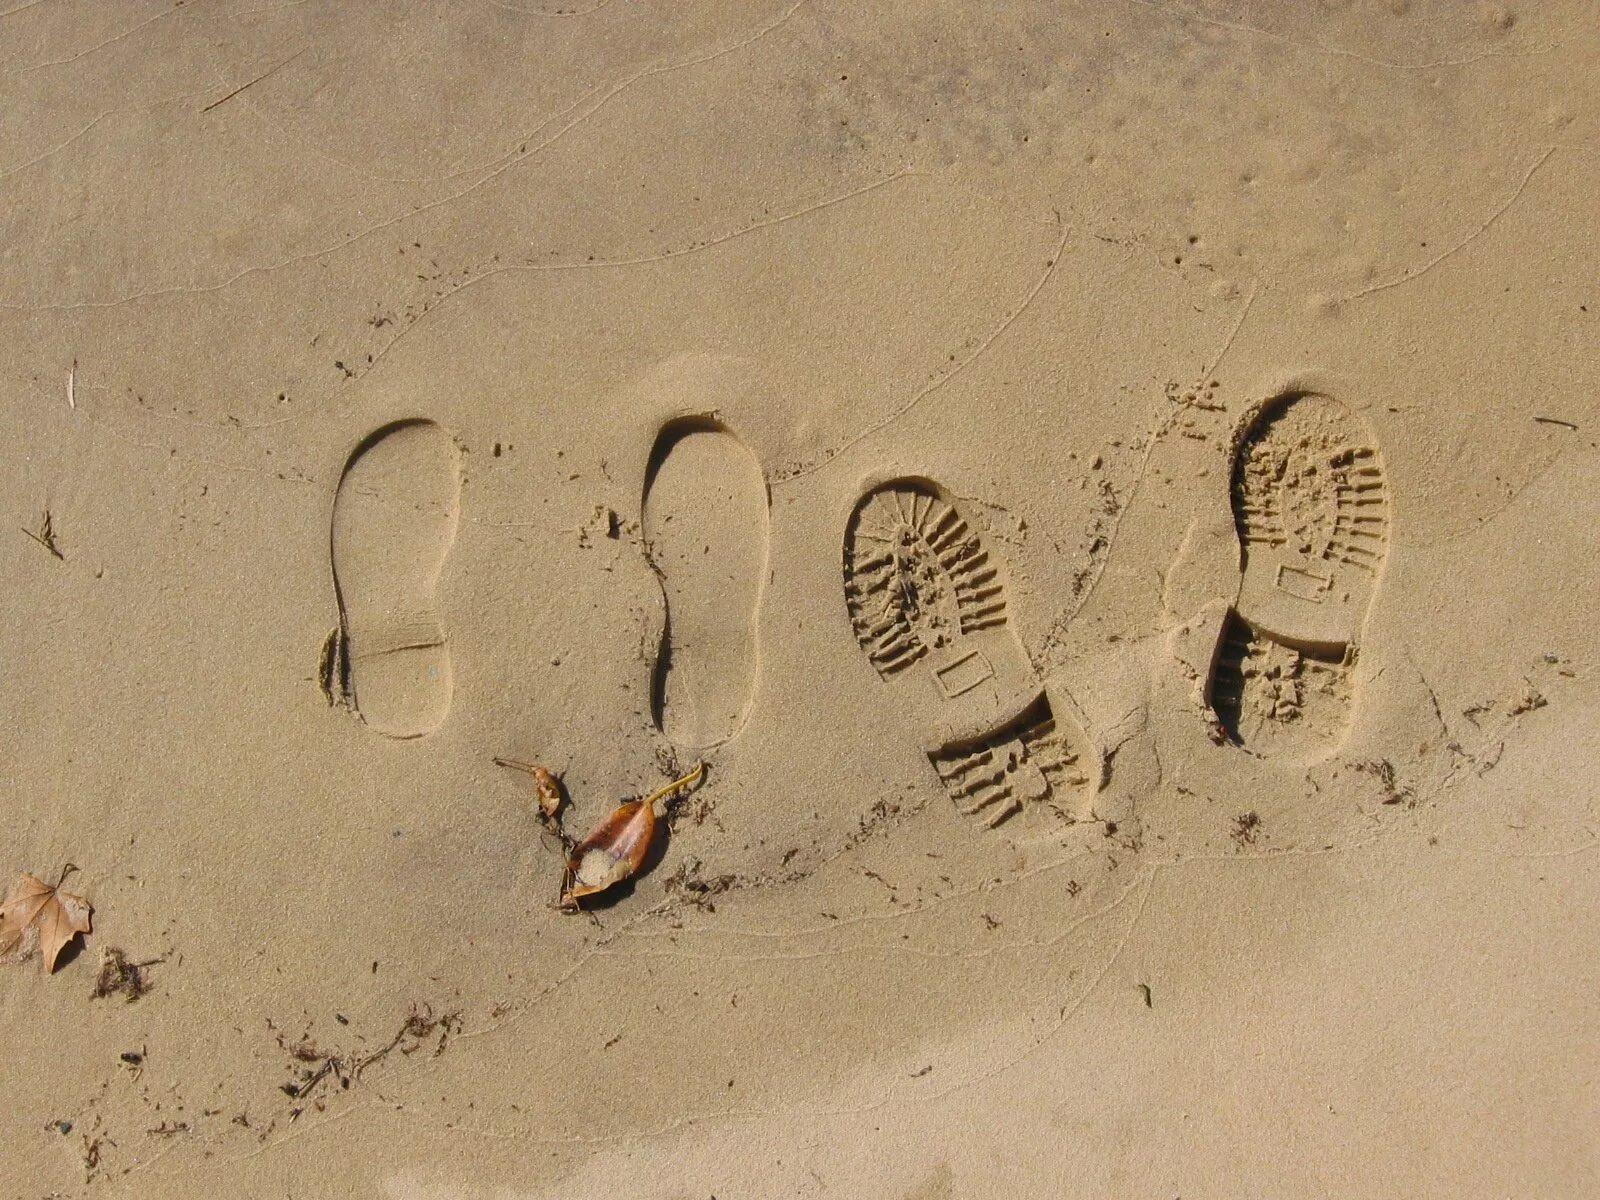 След в истории. Следы от обуви на песке. Дорожка следов на песке. Фотосъемка дорожки следов обуви. Фотографирование дорожки следов.